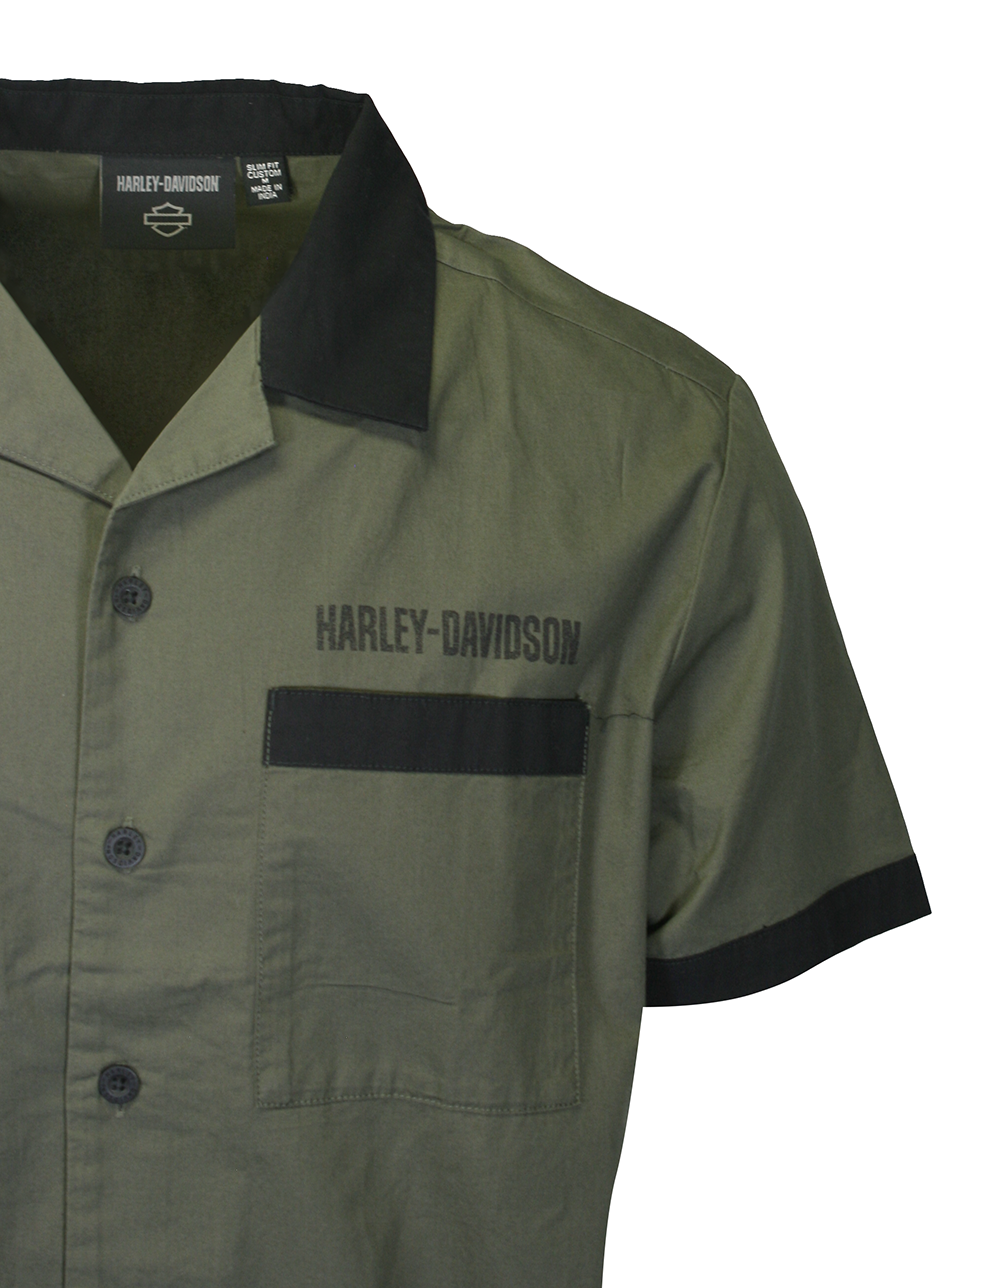 Harley-Davidson Men's Shirt Grape Leaf Combustion S/S Woven (S53)